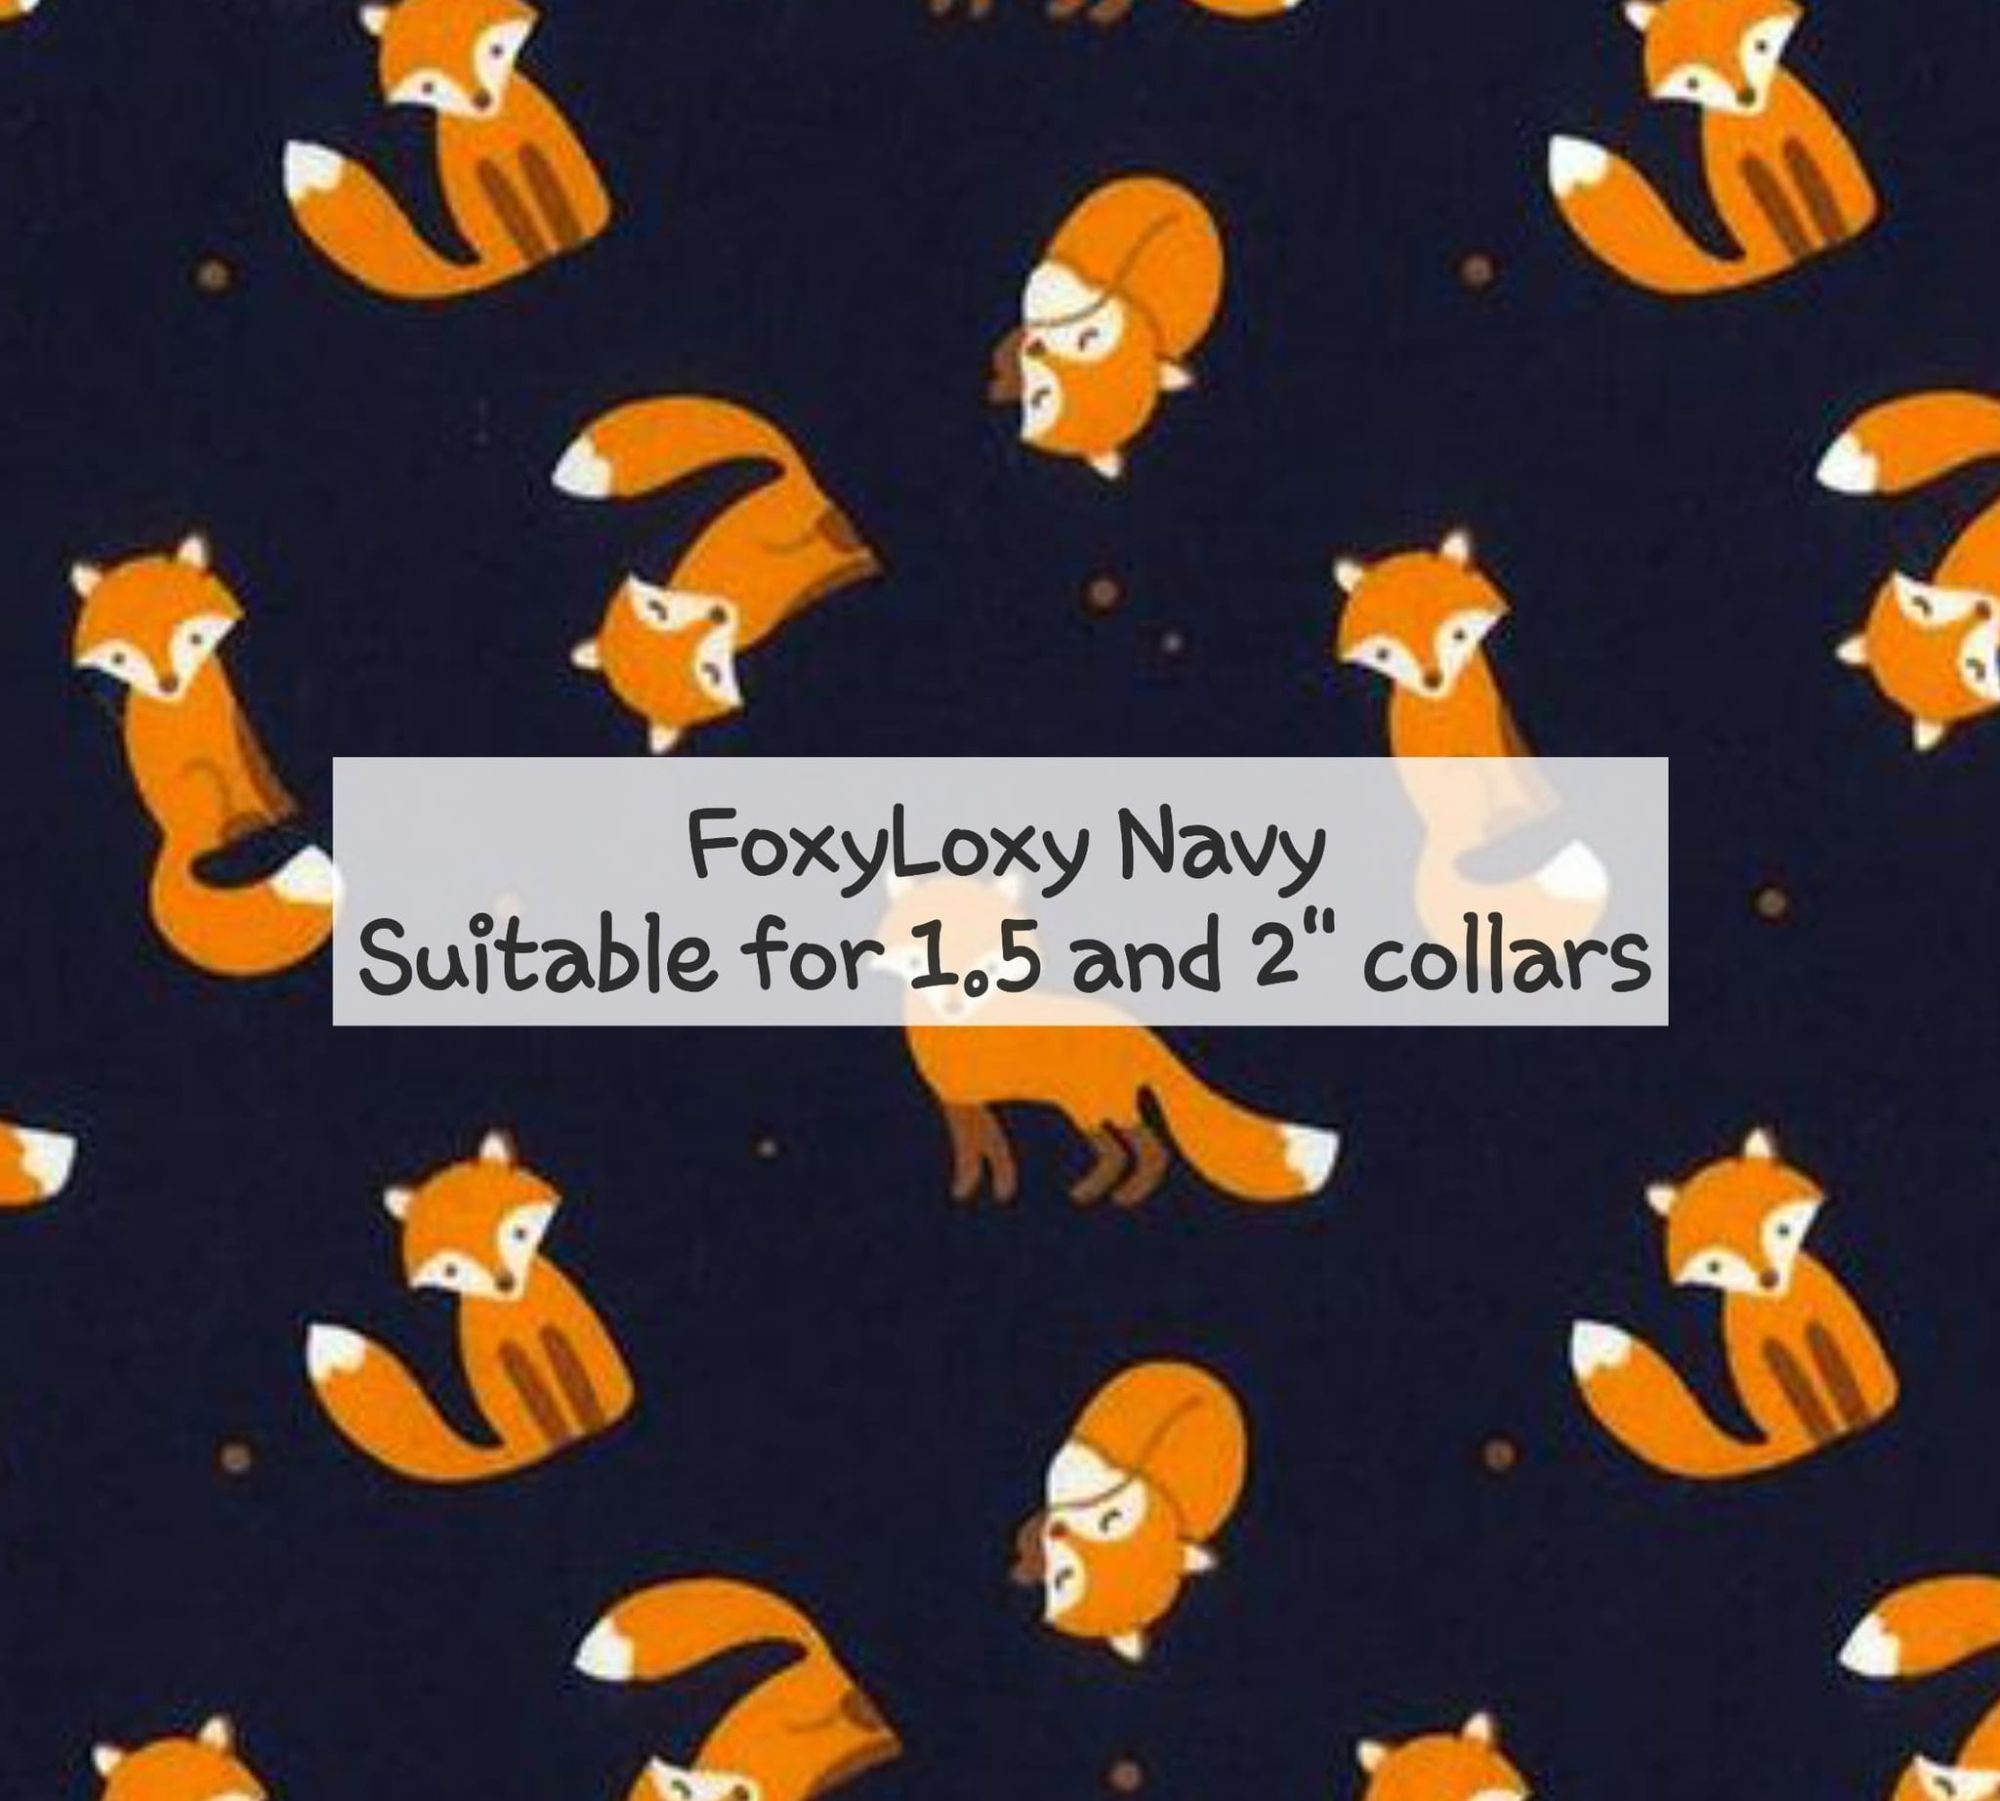 FoxyLoxy Navy